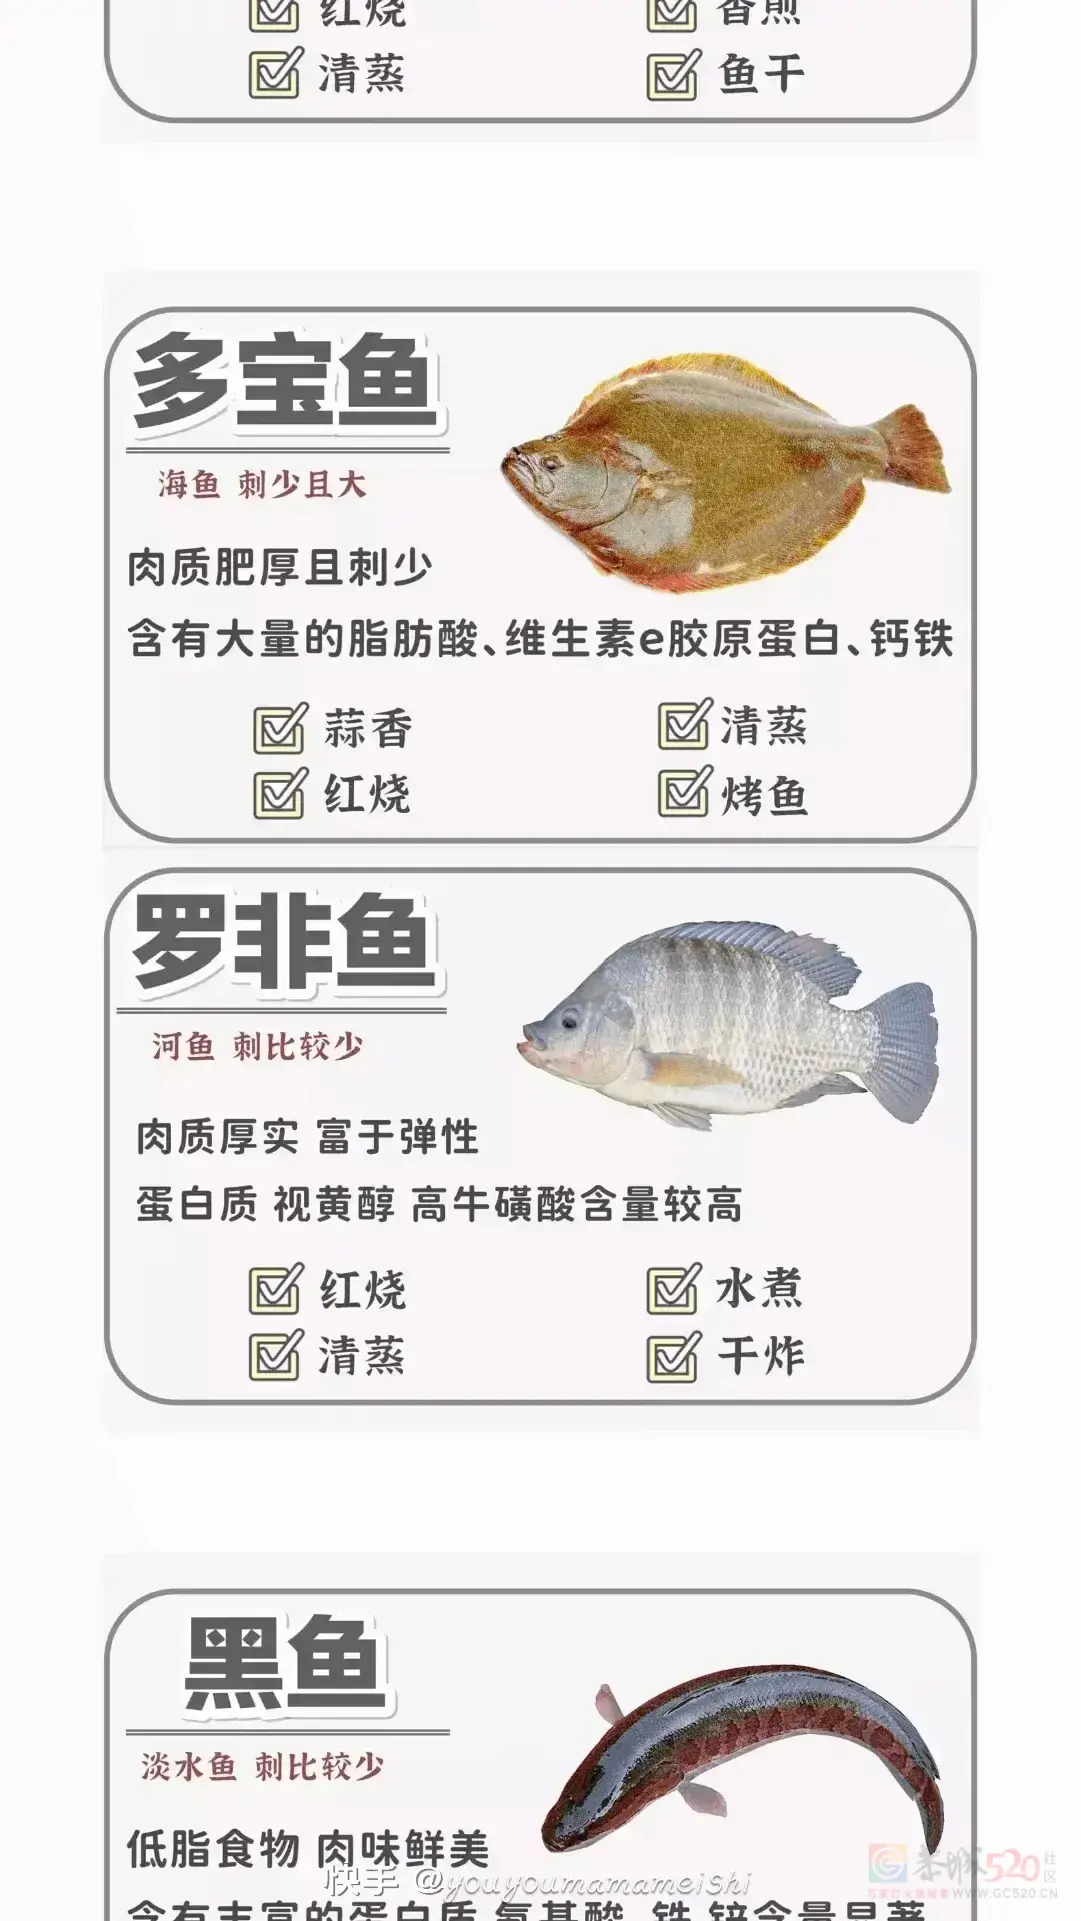 ——识鱼与鱼的做法412 / 作者:力行者 / 帖子ID:292470